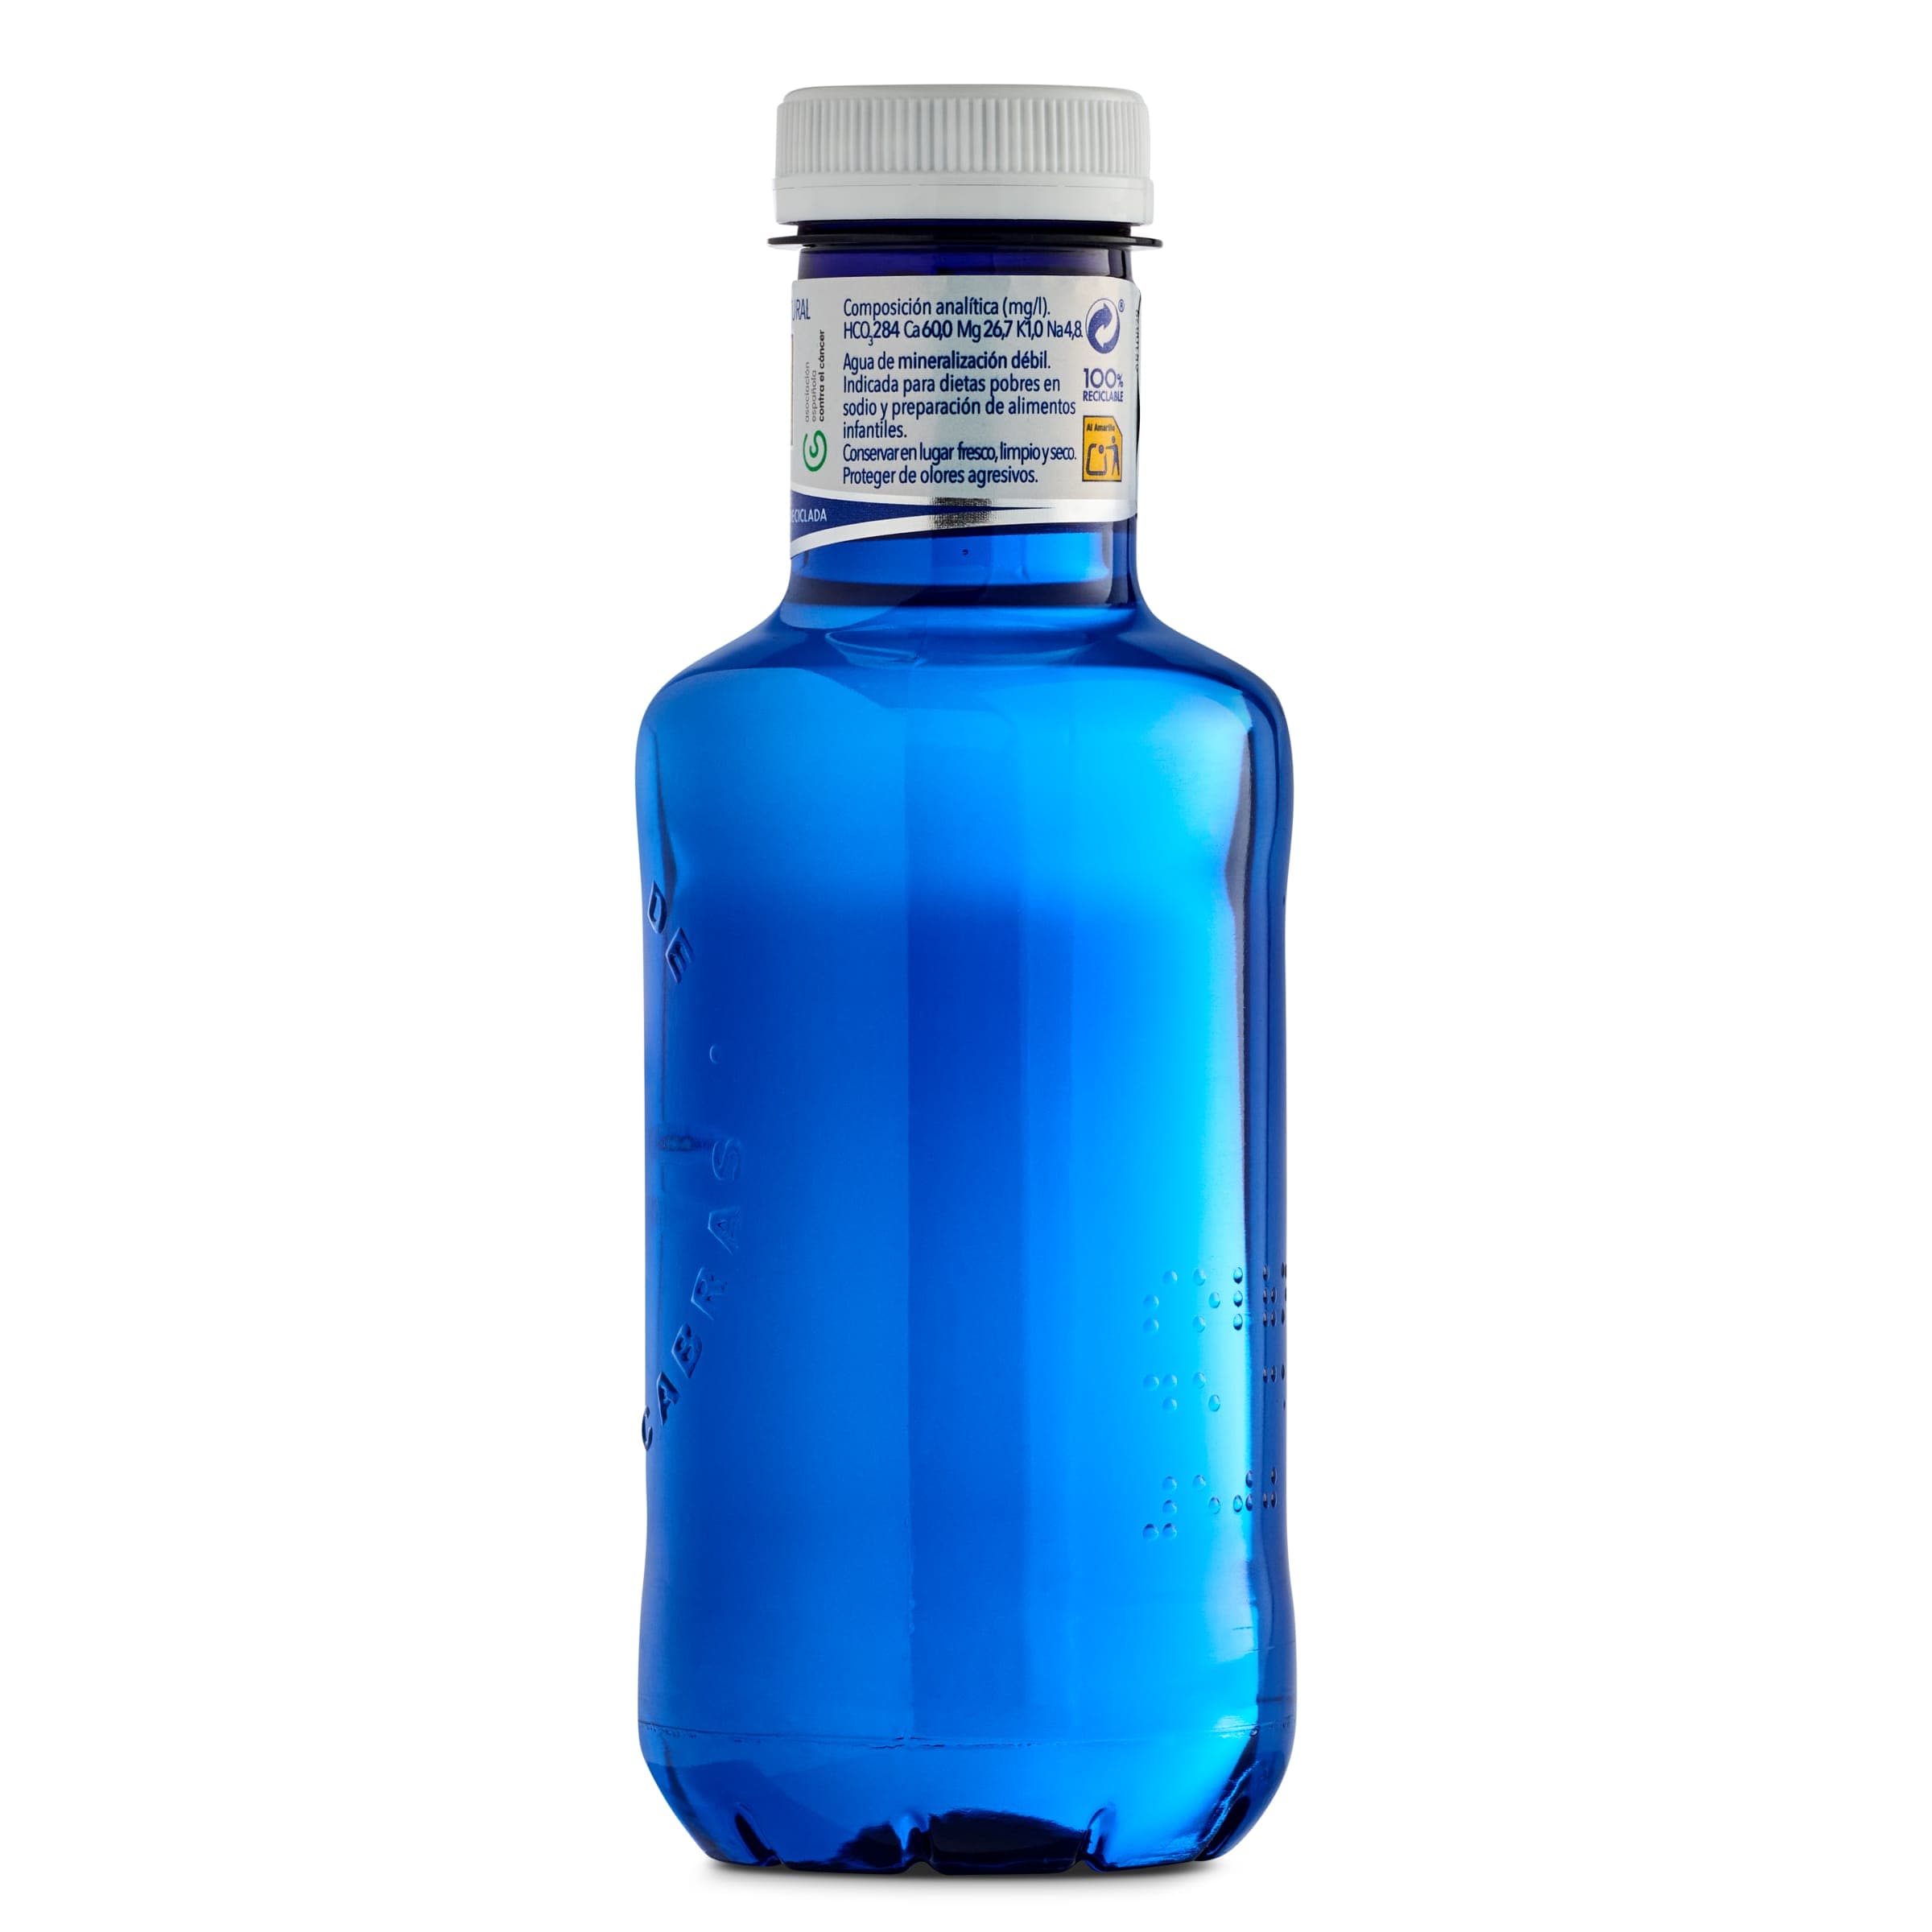 Agua mineral natural Solán de Cabras botella 50 cl - Supermercados DIA